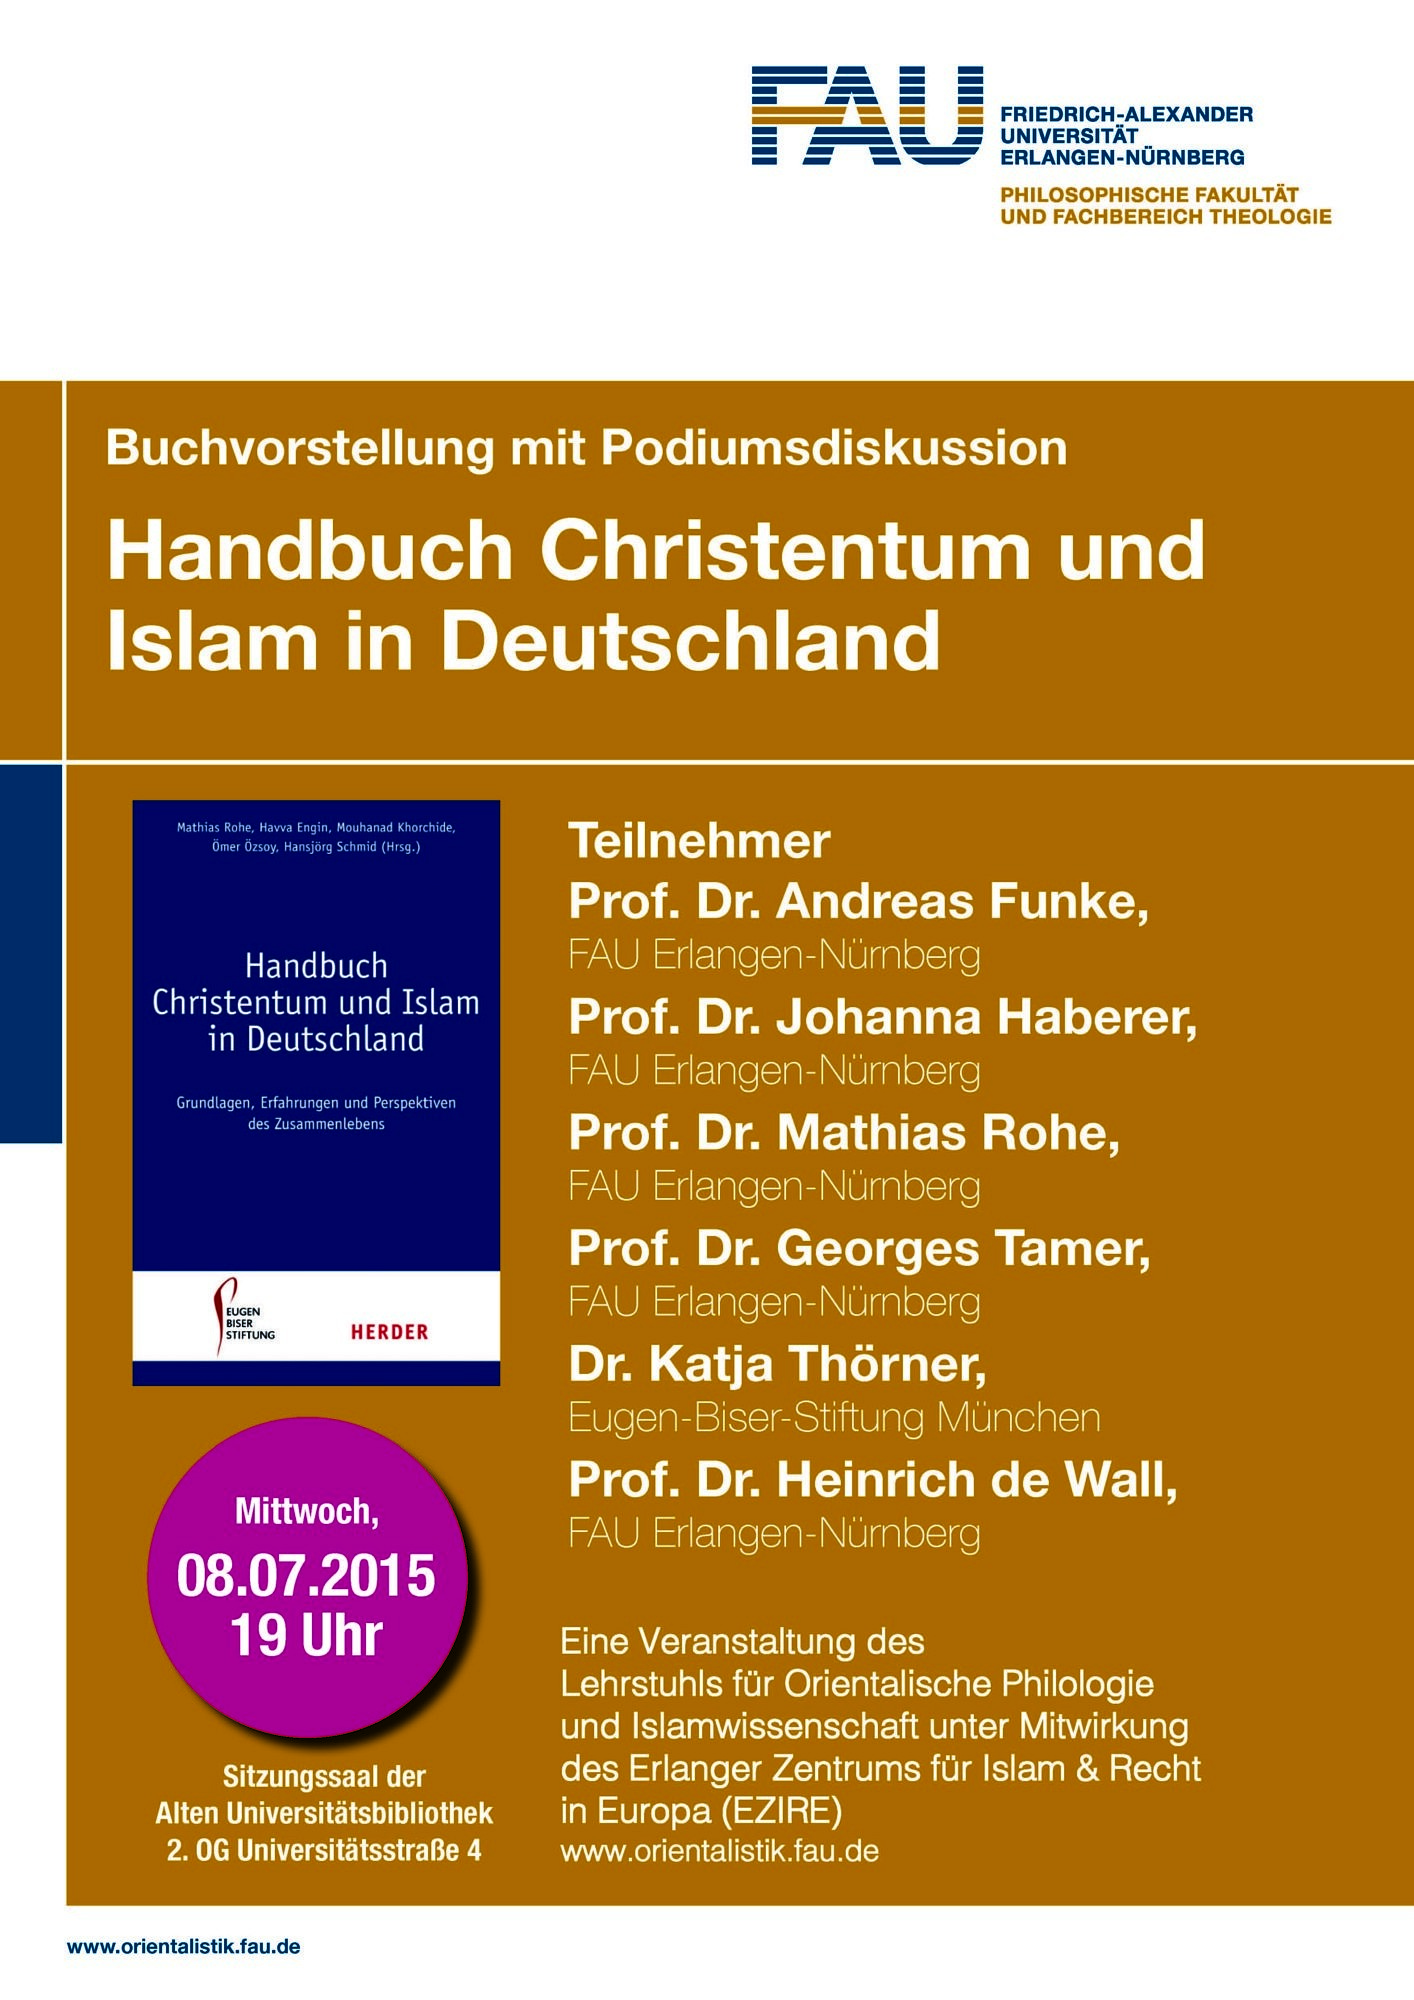 Zum Artikel "Handbuch Christentum und Islam"